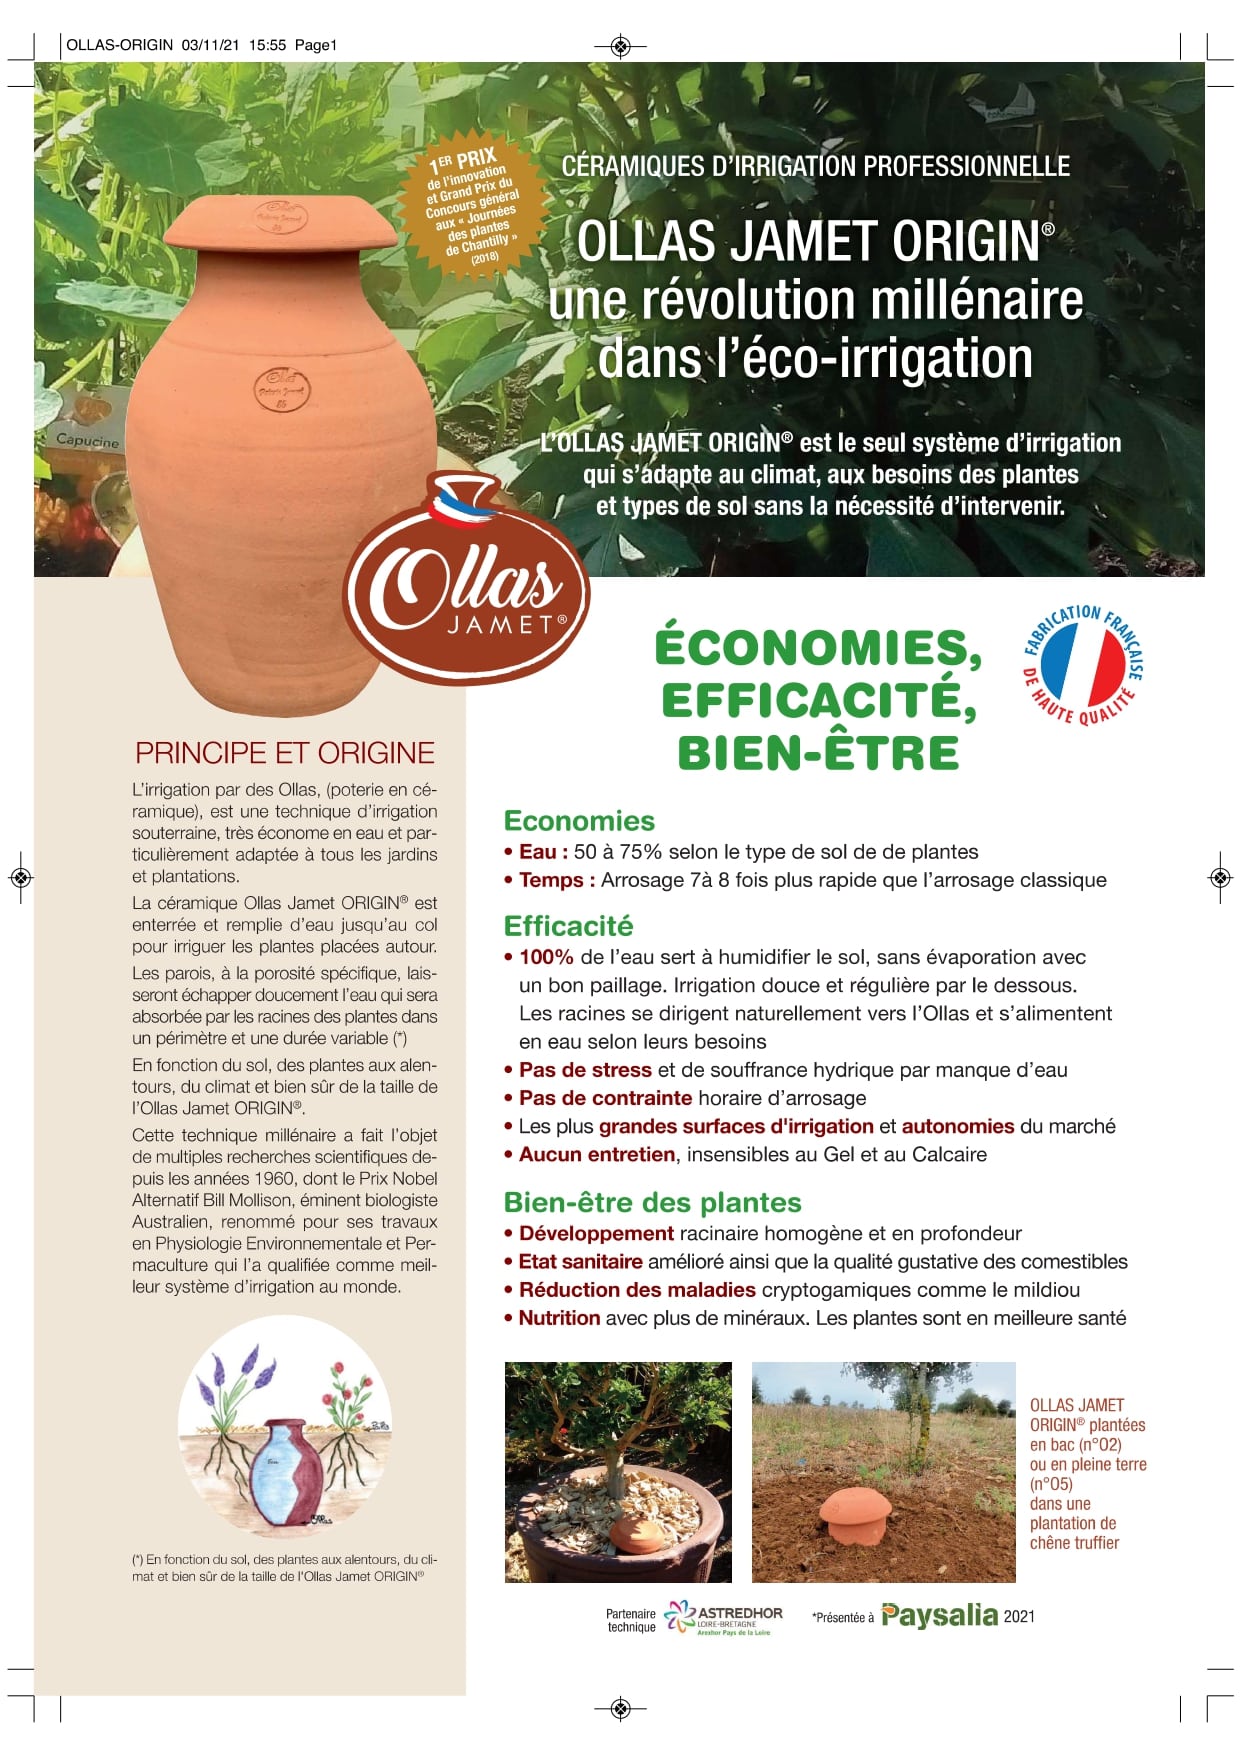 Poterie Jamet Présente Le Système D’irrigation Ollas - Made In France, Durable Et Certifié